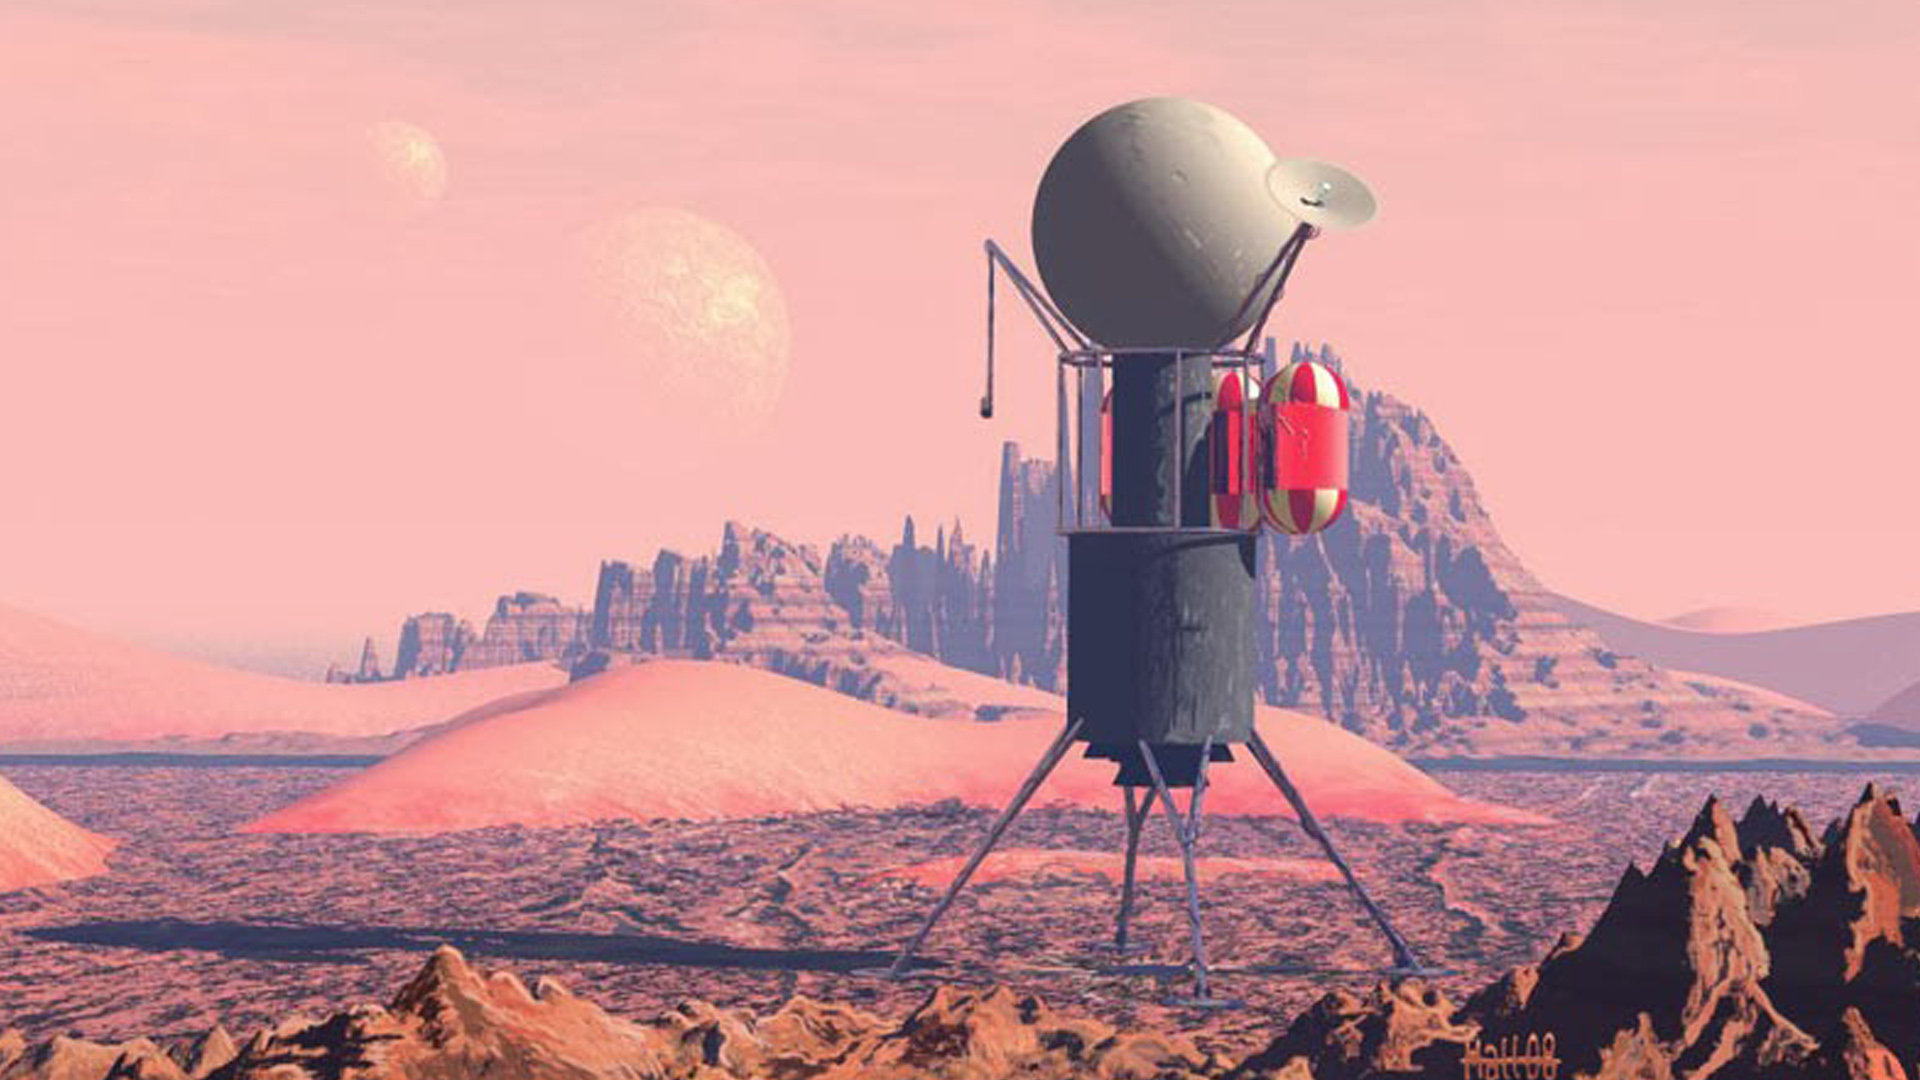 A propósito del Trappist-1: La colonización de Marte, crónica de Ray Bradbury